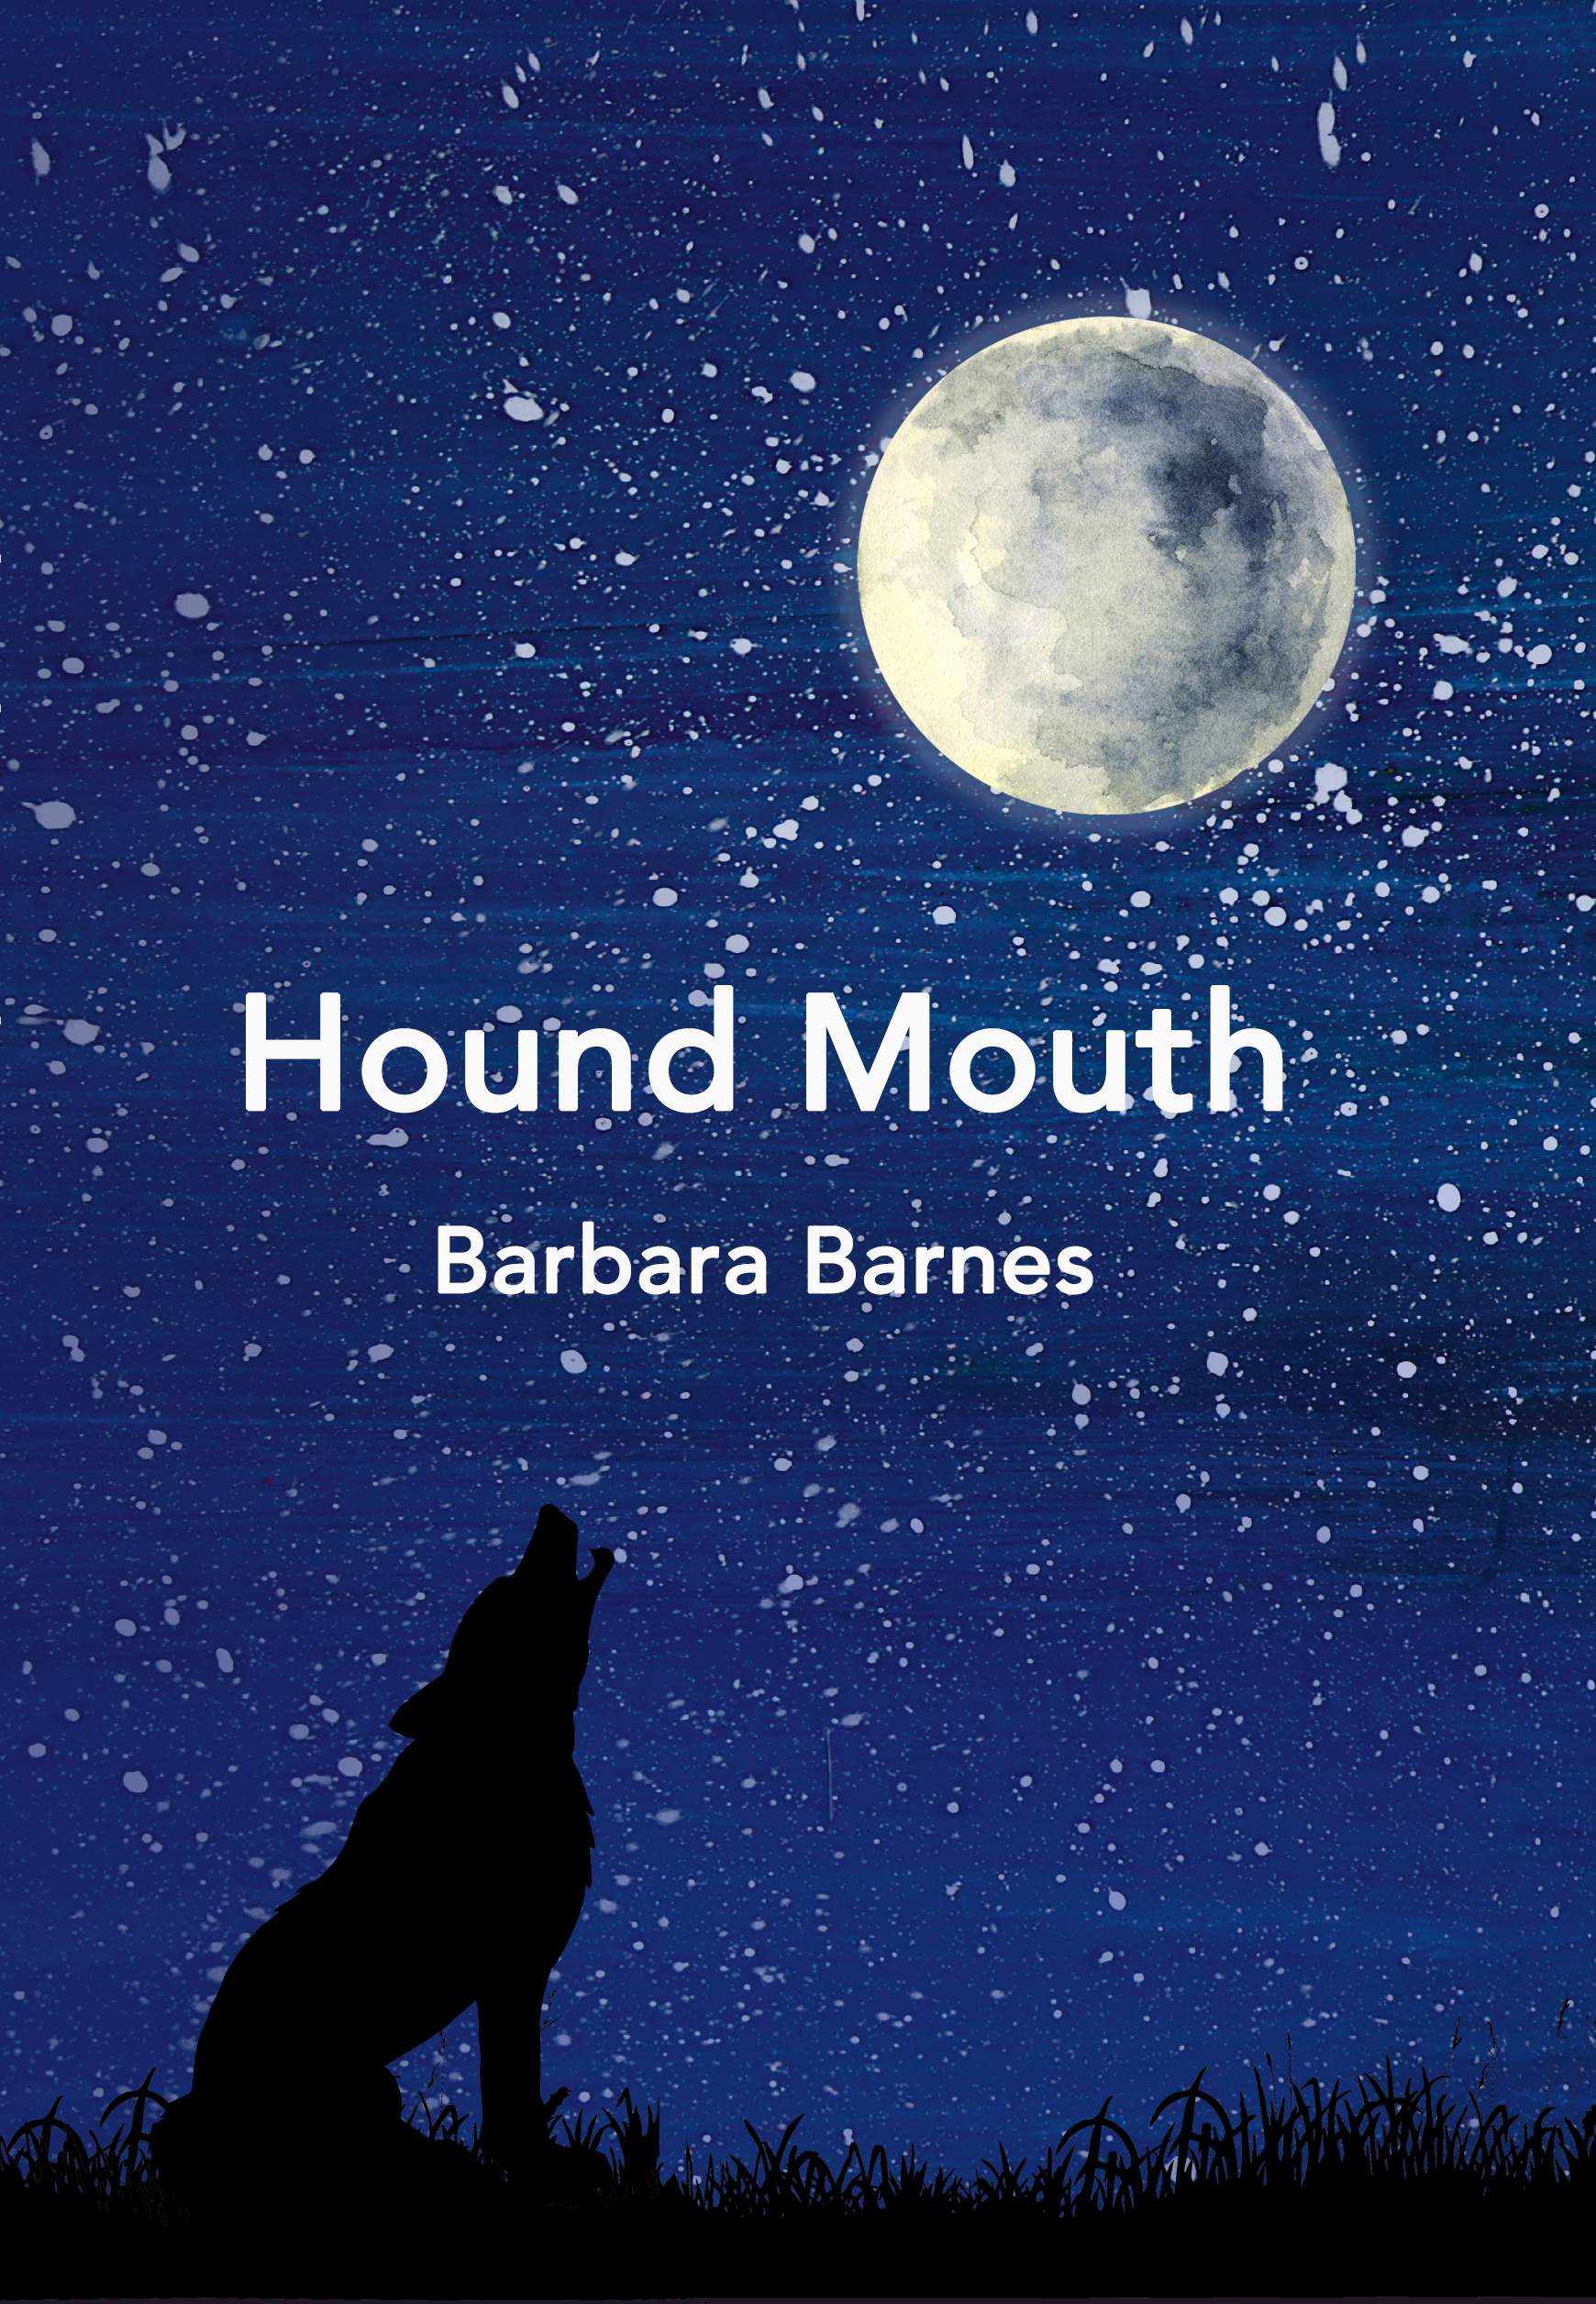 hound mouth